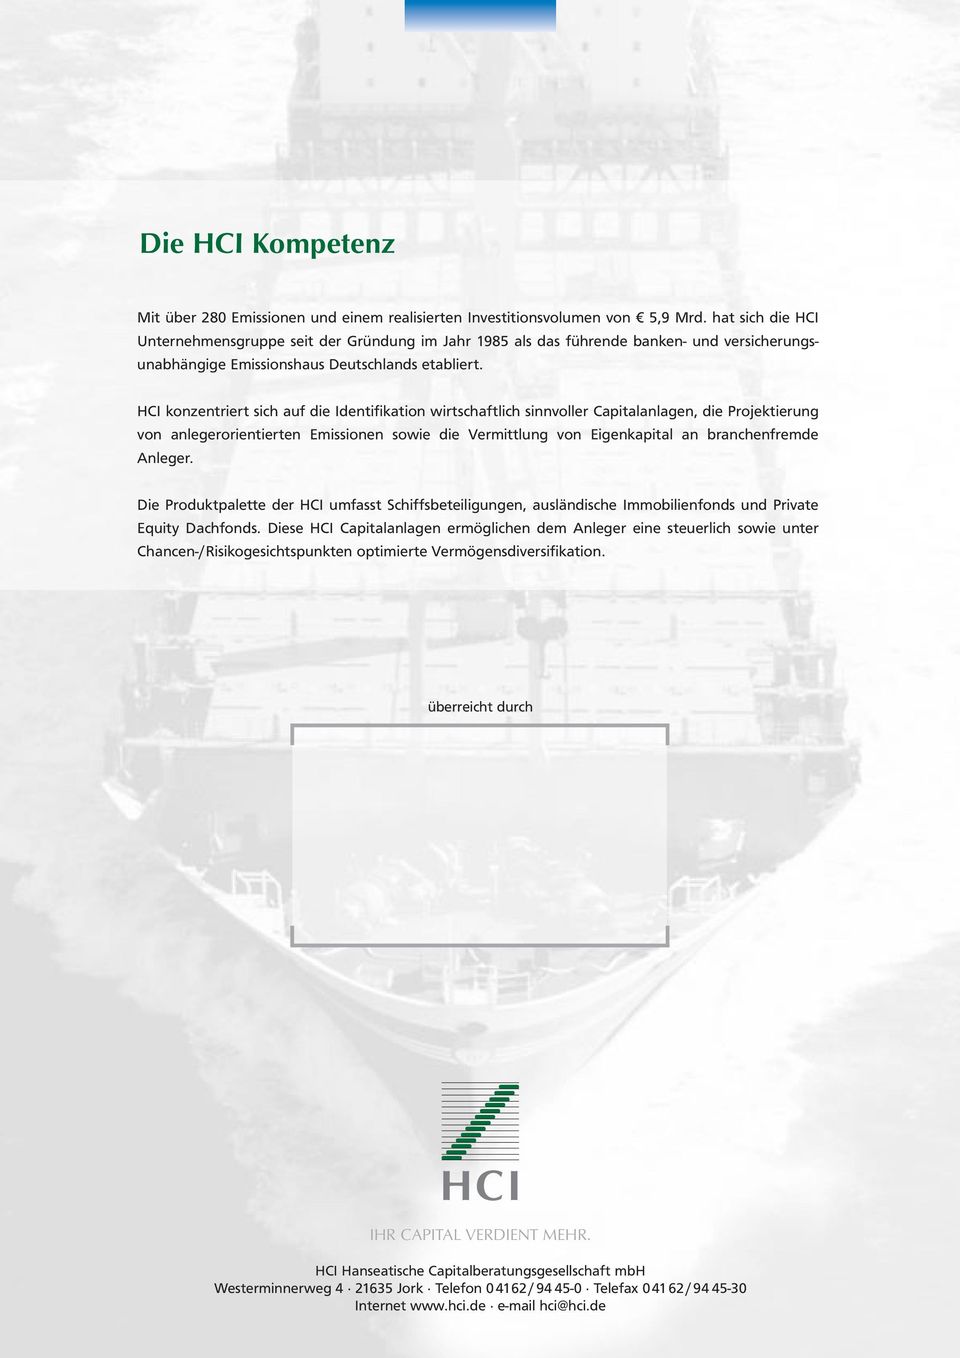 HCI konzentriert sich auf die Identifikation wirtschaftlich sinnvoller Capitalanlagen, die Projektierung von anlegerorientierten Emissionen sowie die Vermittlung von Eigenkapital an branchenfremde